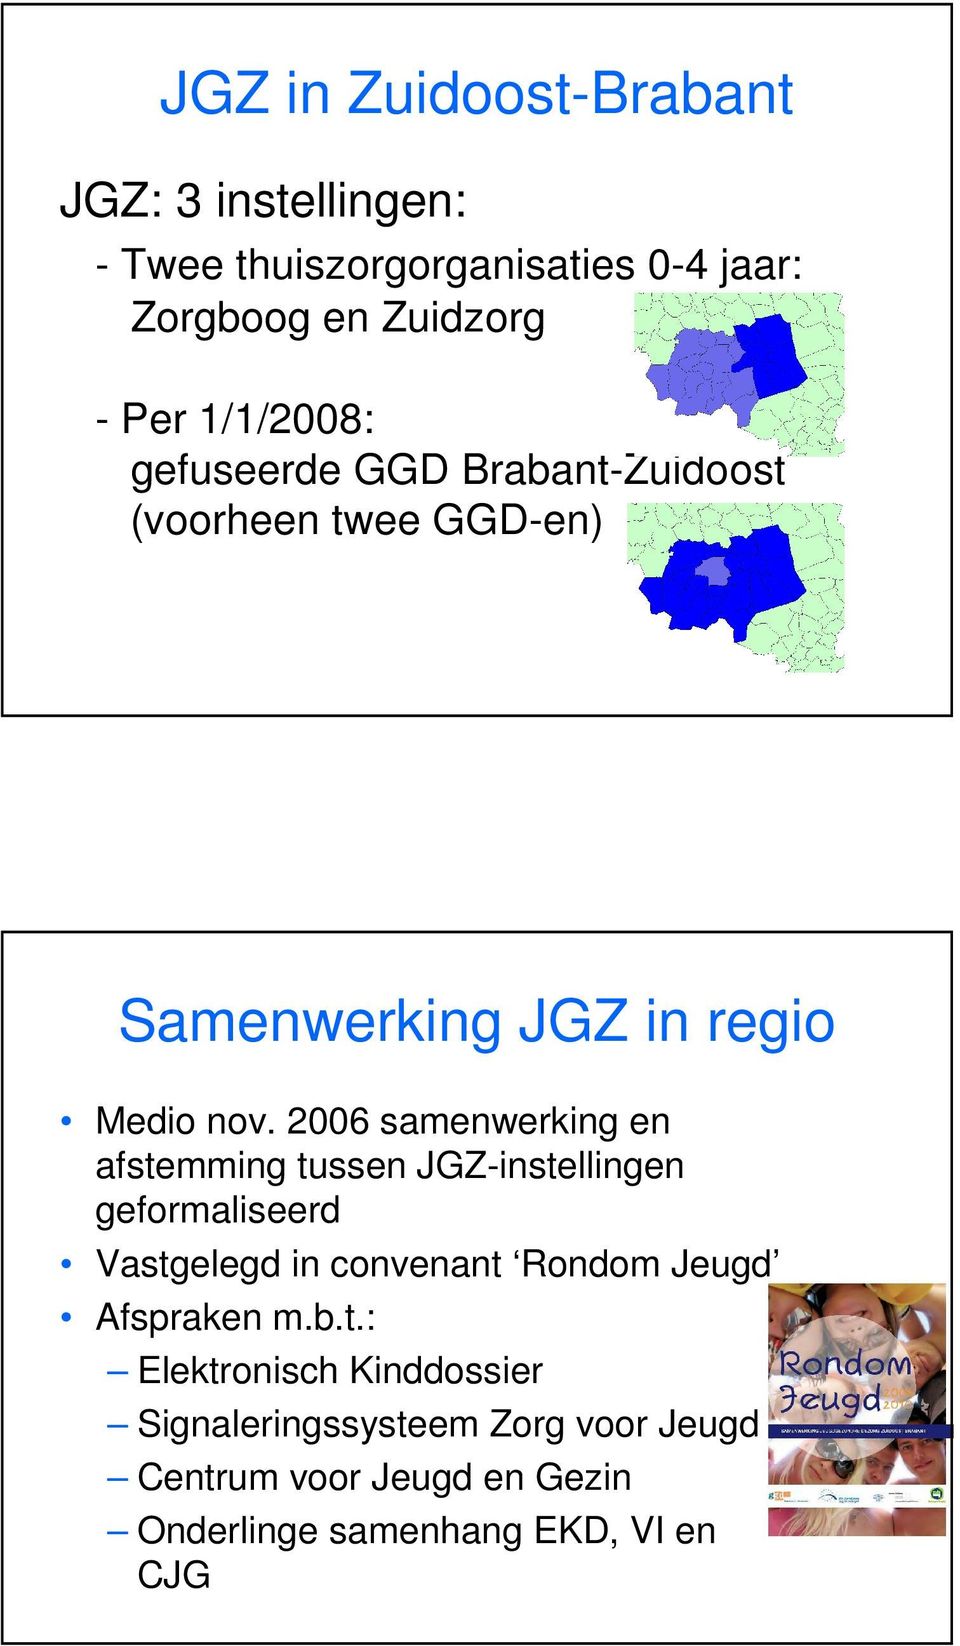 2006 samenwerking en afstemming tussen JGZ-instellingen geformaliseerd Vastgelegd in convenant Rondom Jeugd